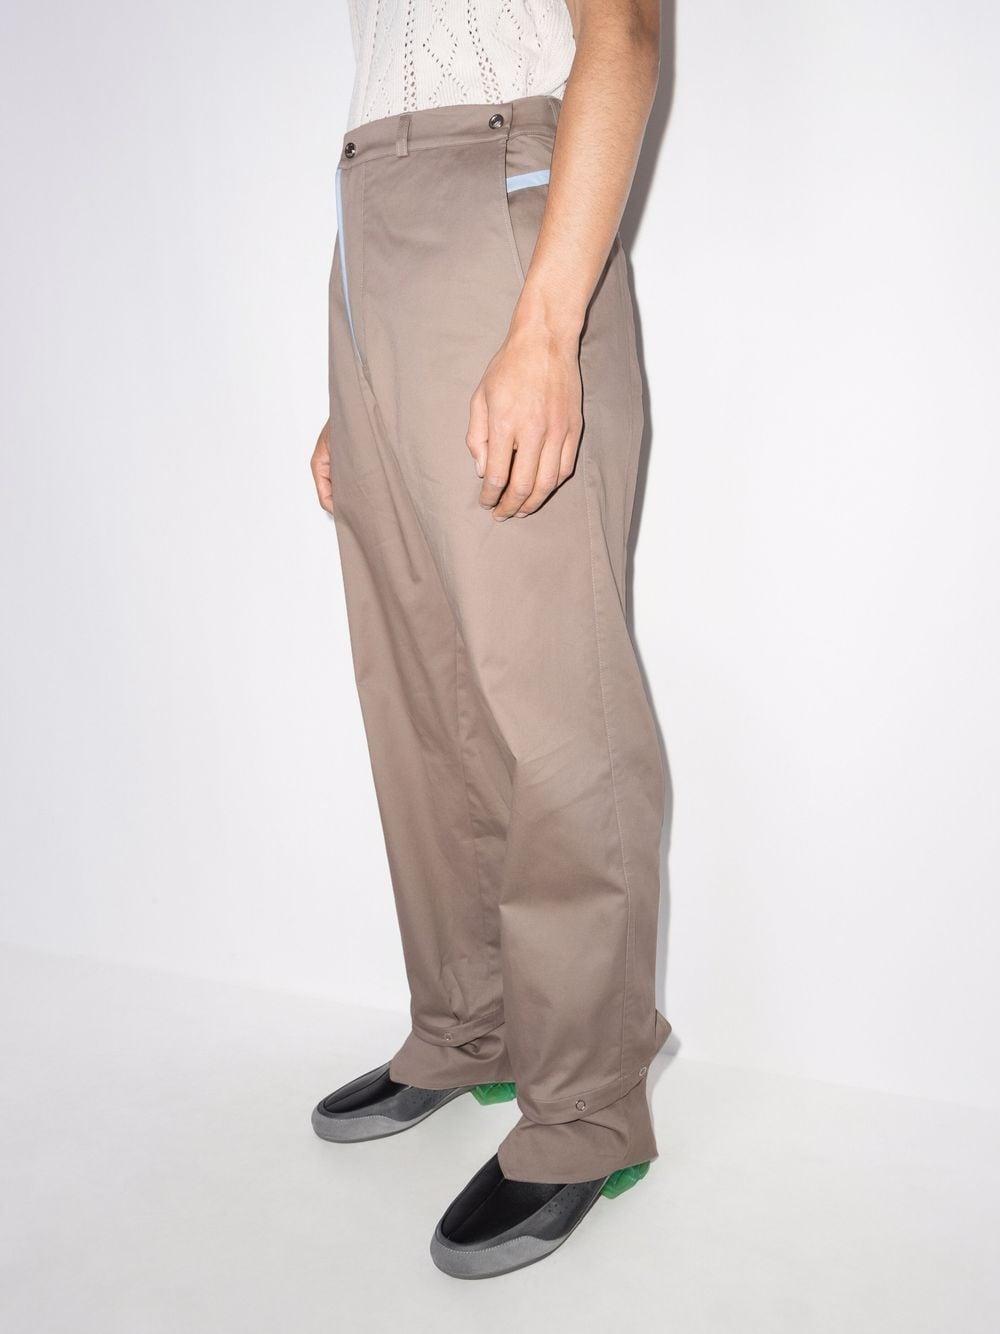 Kiko Kostadinov Haidu Hem Trouser in Gray for Men | Lyst